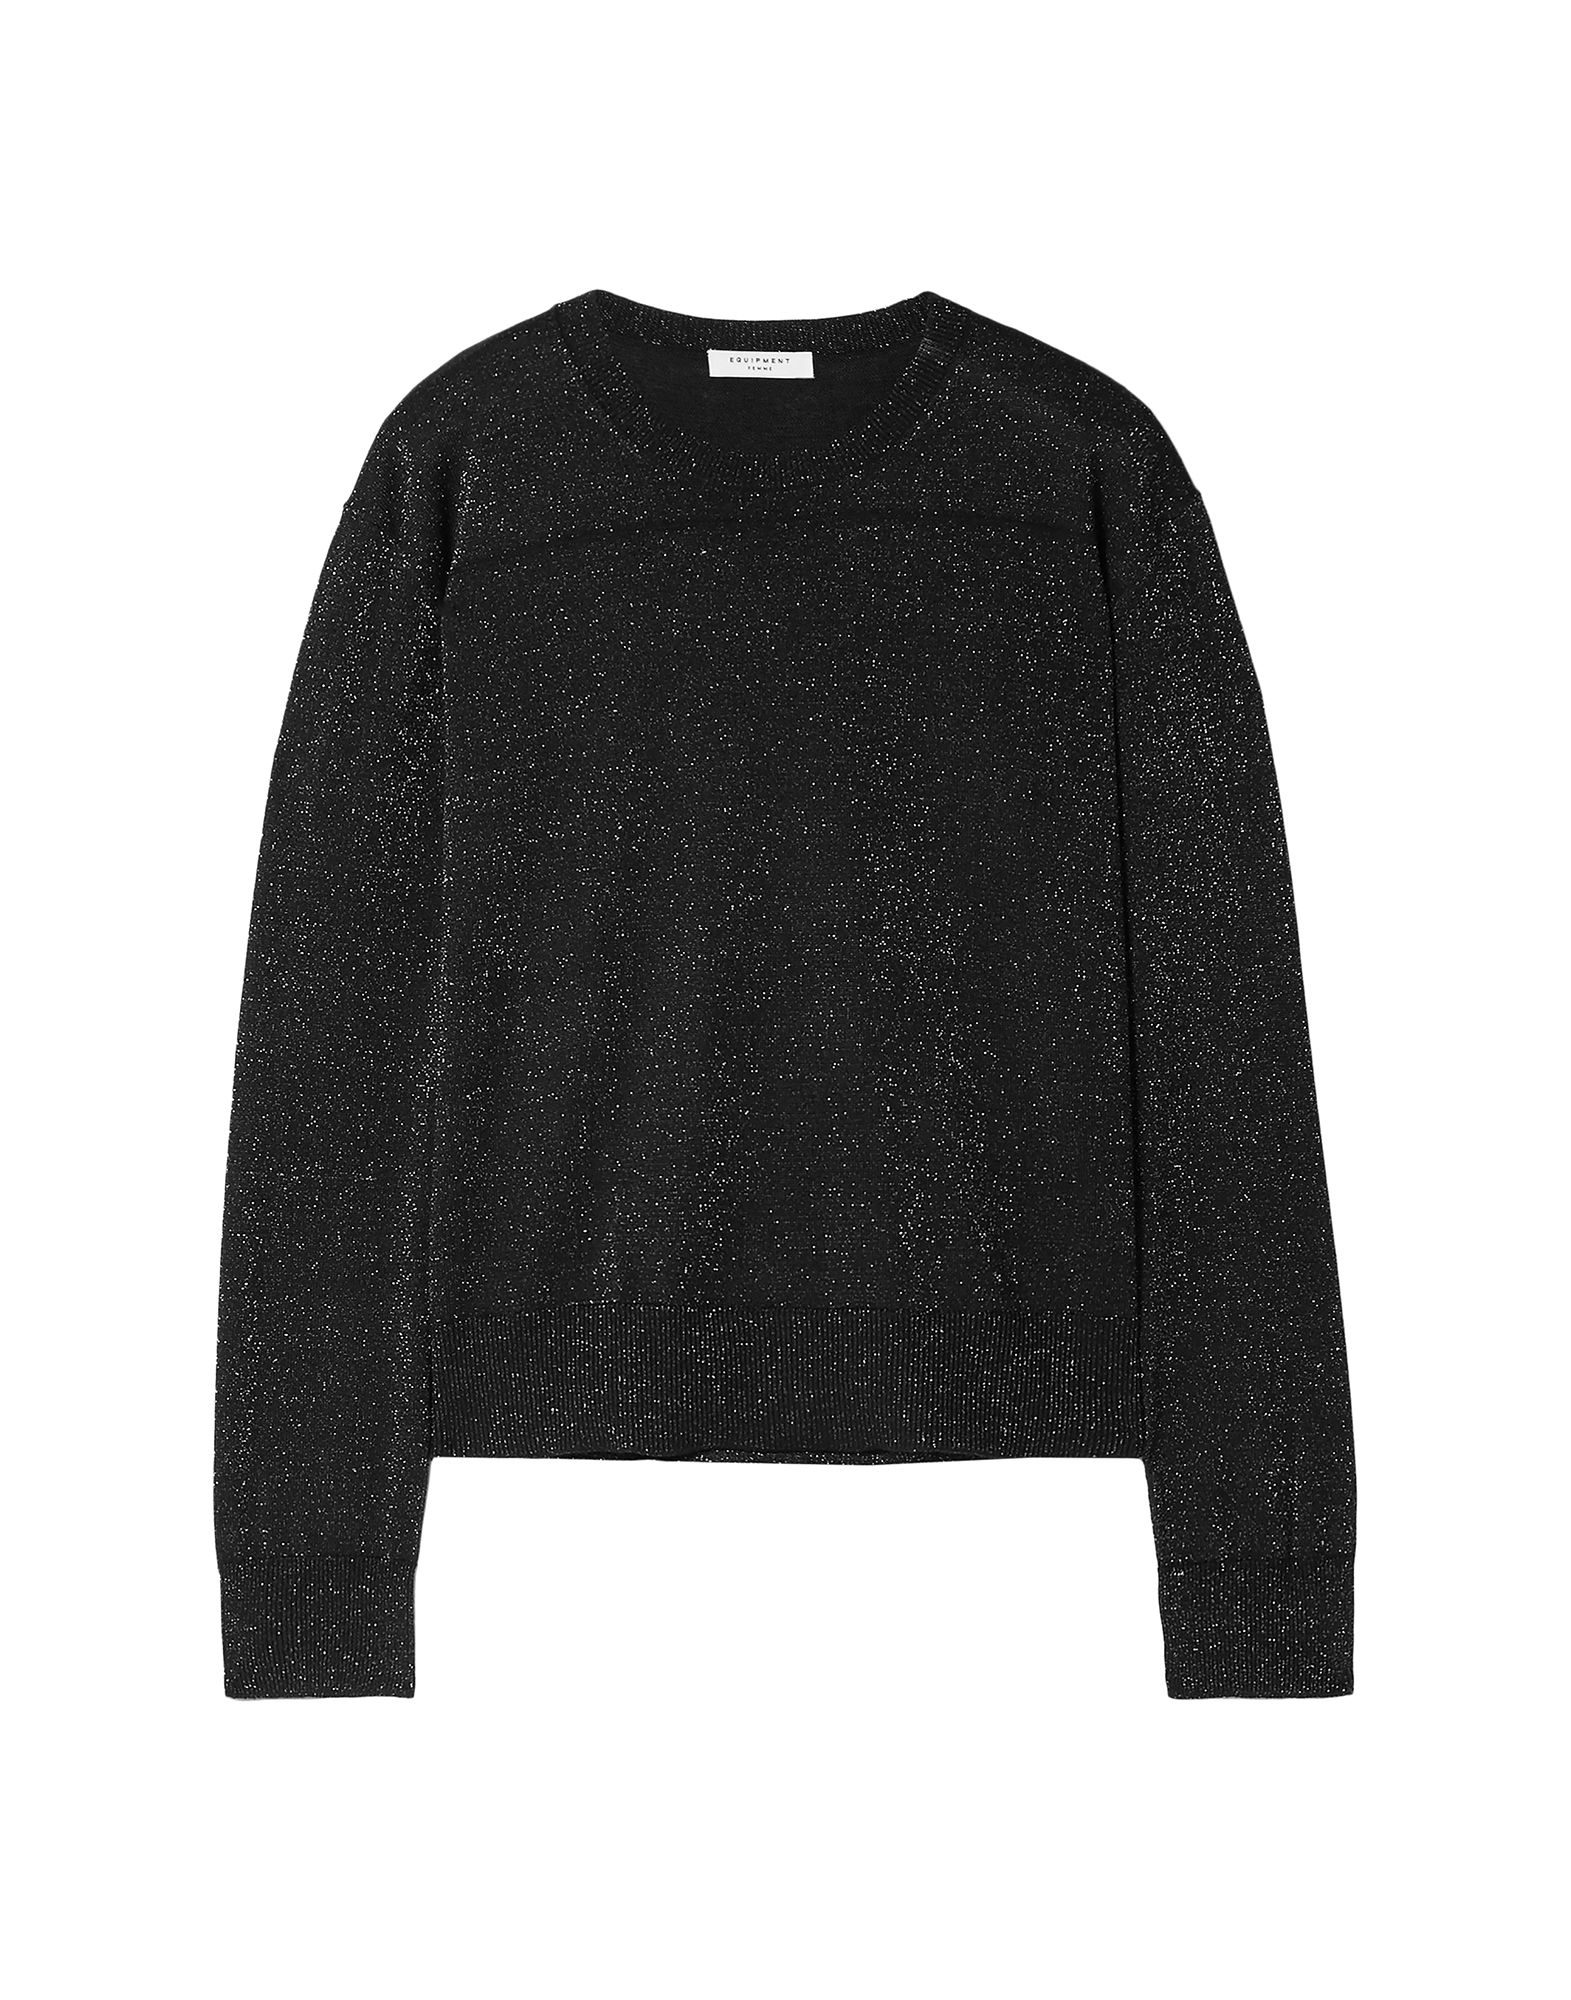 EQUIPMENT Sweaters - Item 14057521